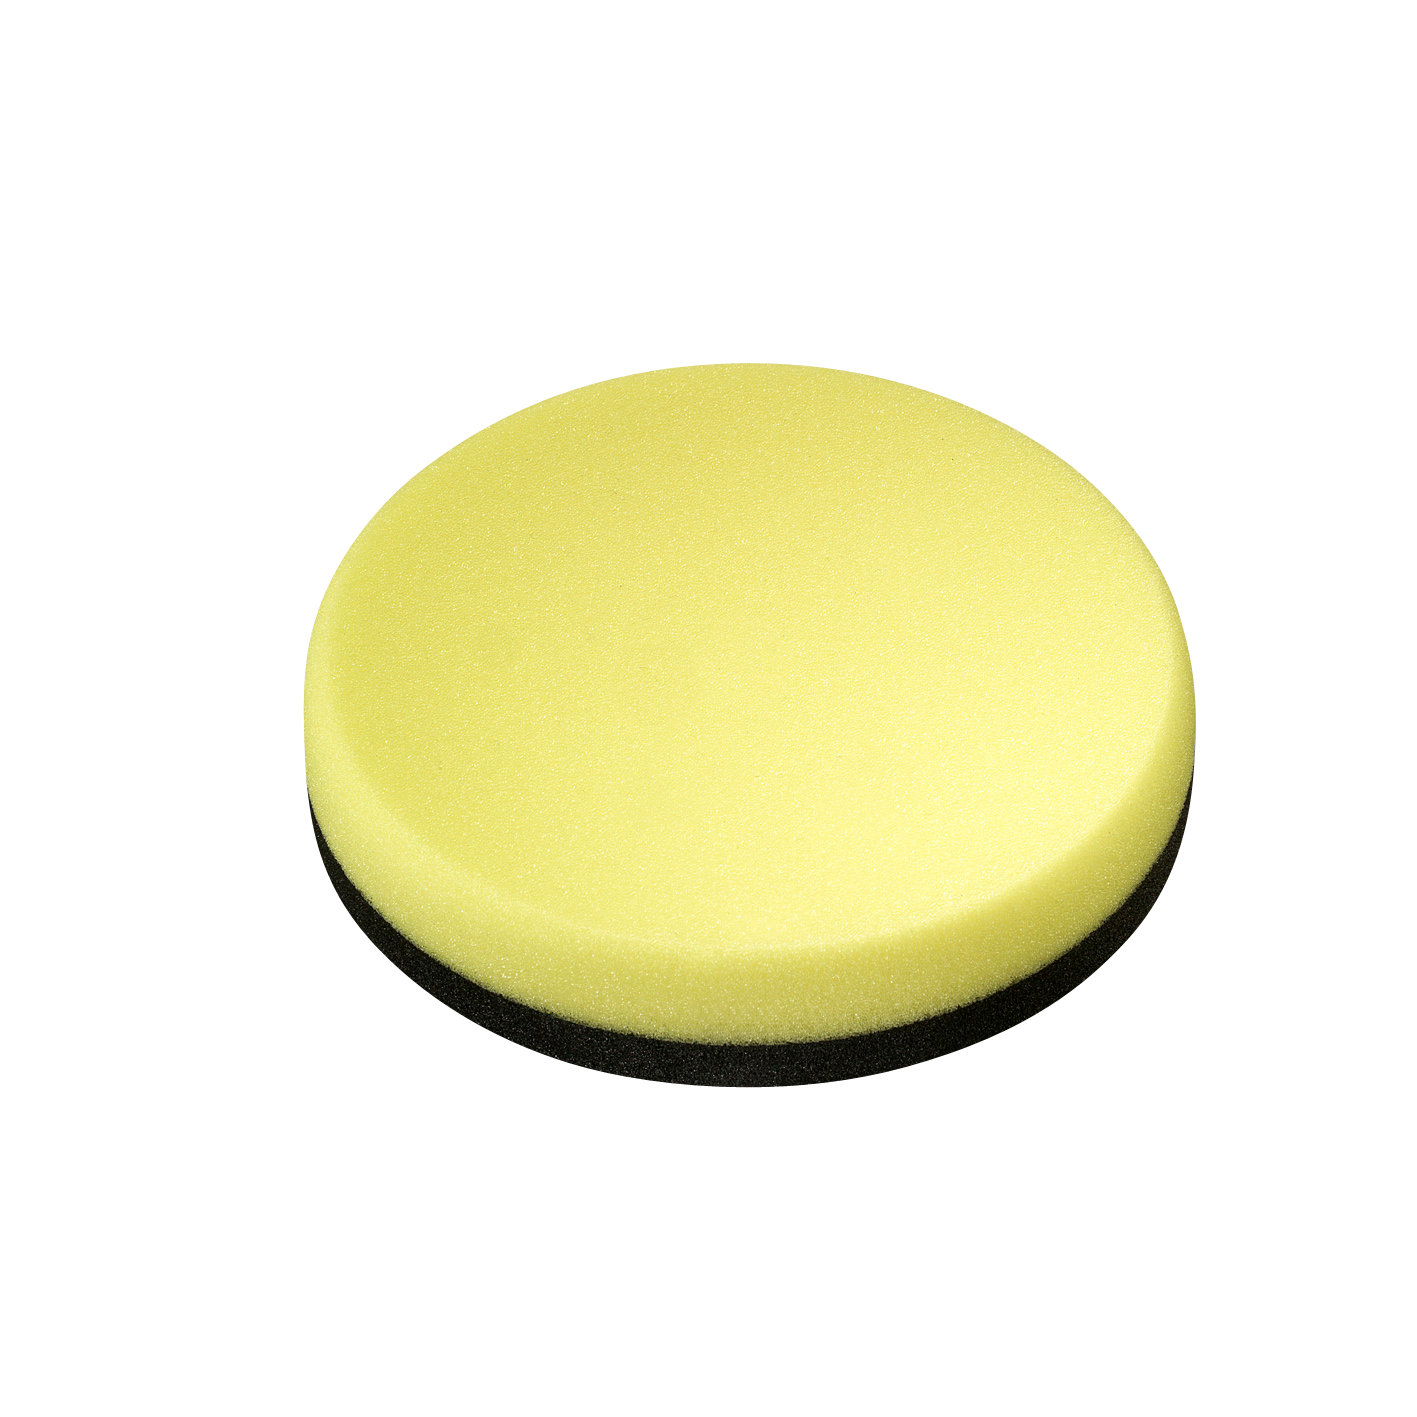 siachrome disque de polissage jaune Ø145mm (2 pièces)